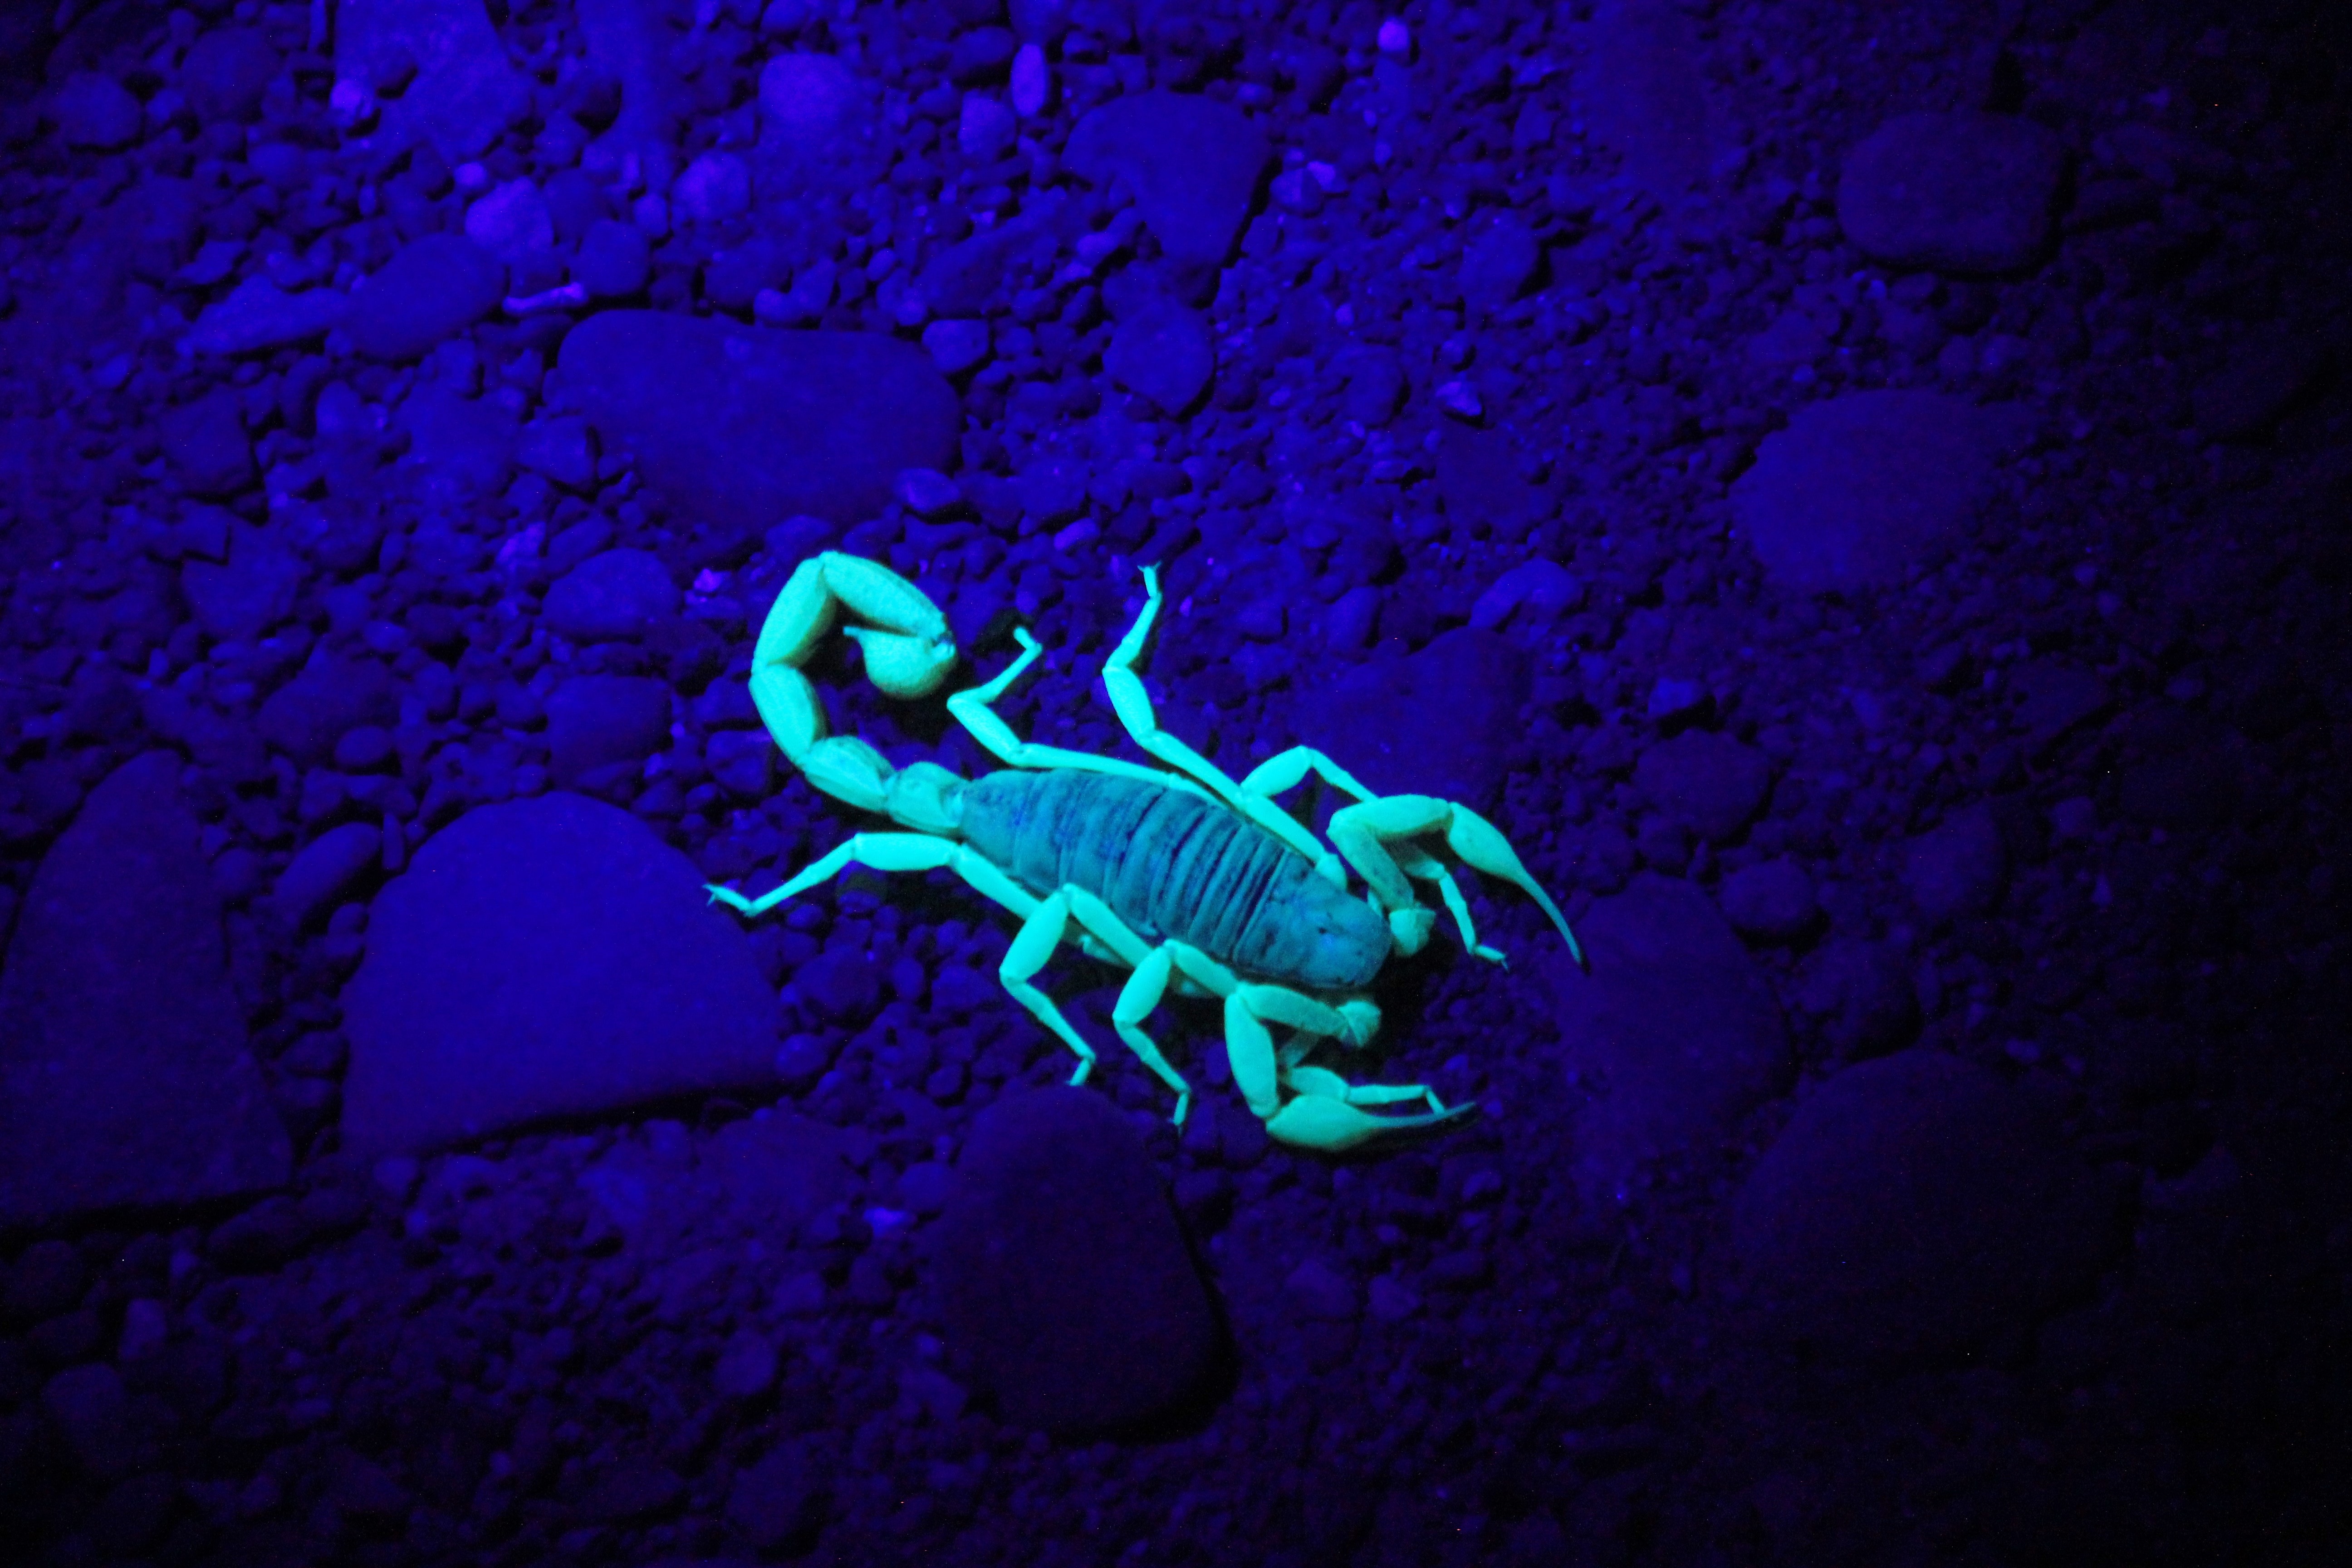 A glowing scorpion. | Source: Unsplash